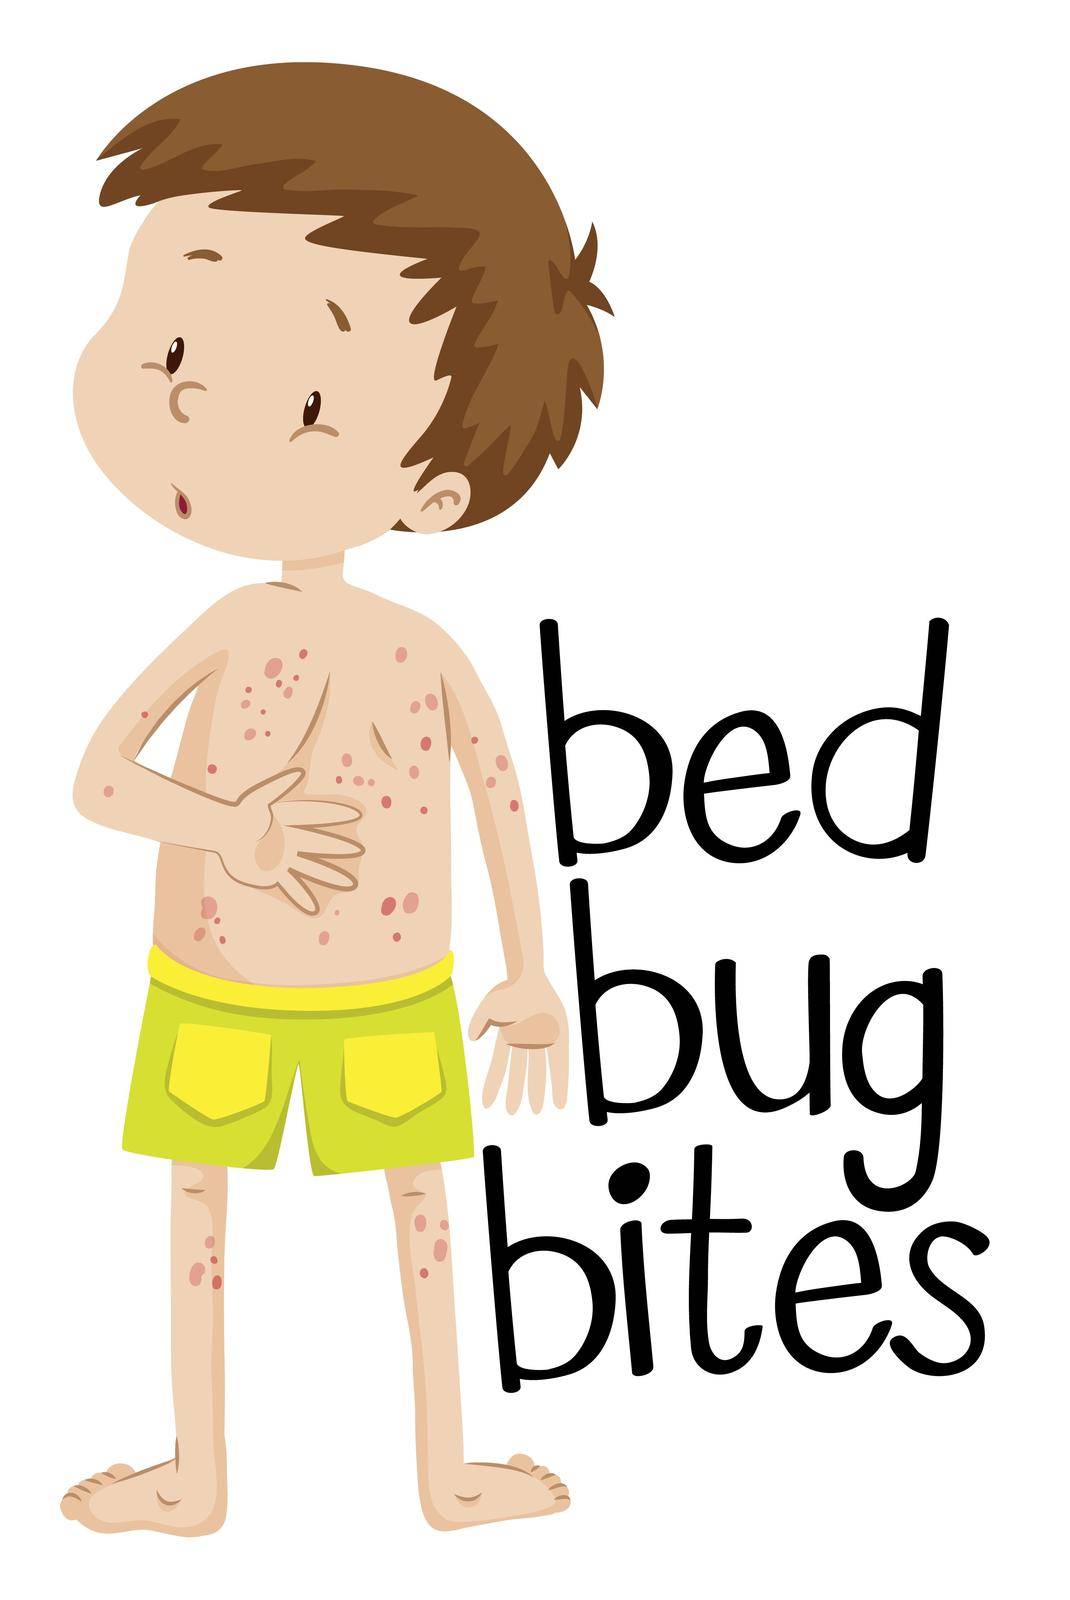 Boy having bed bug bites illustration